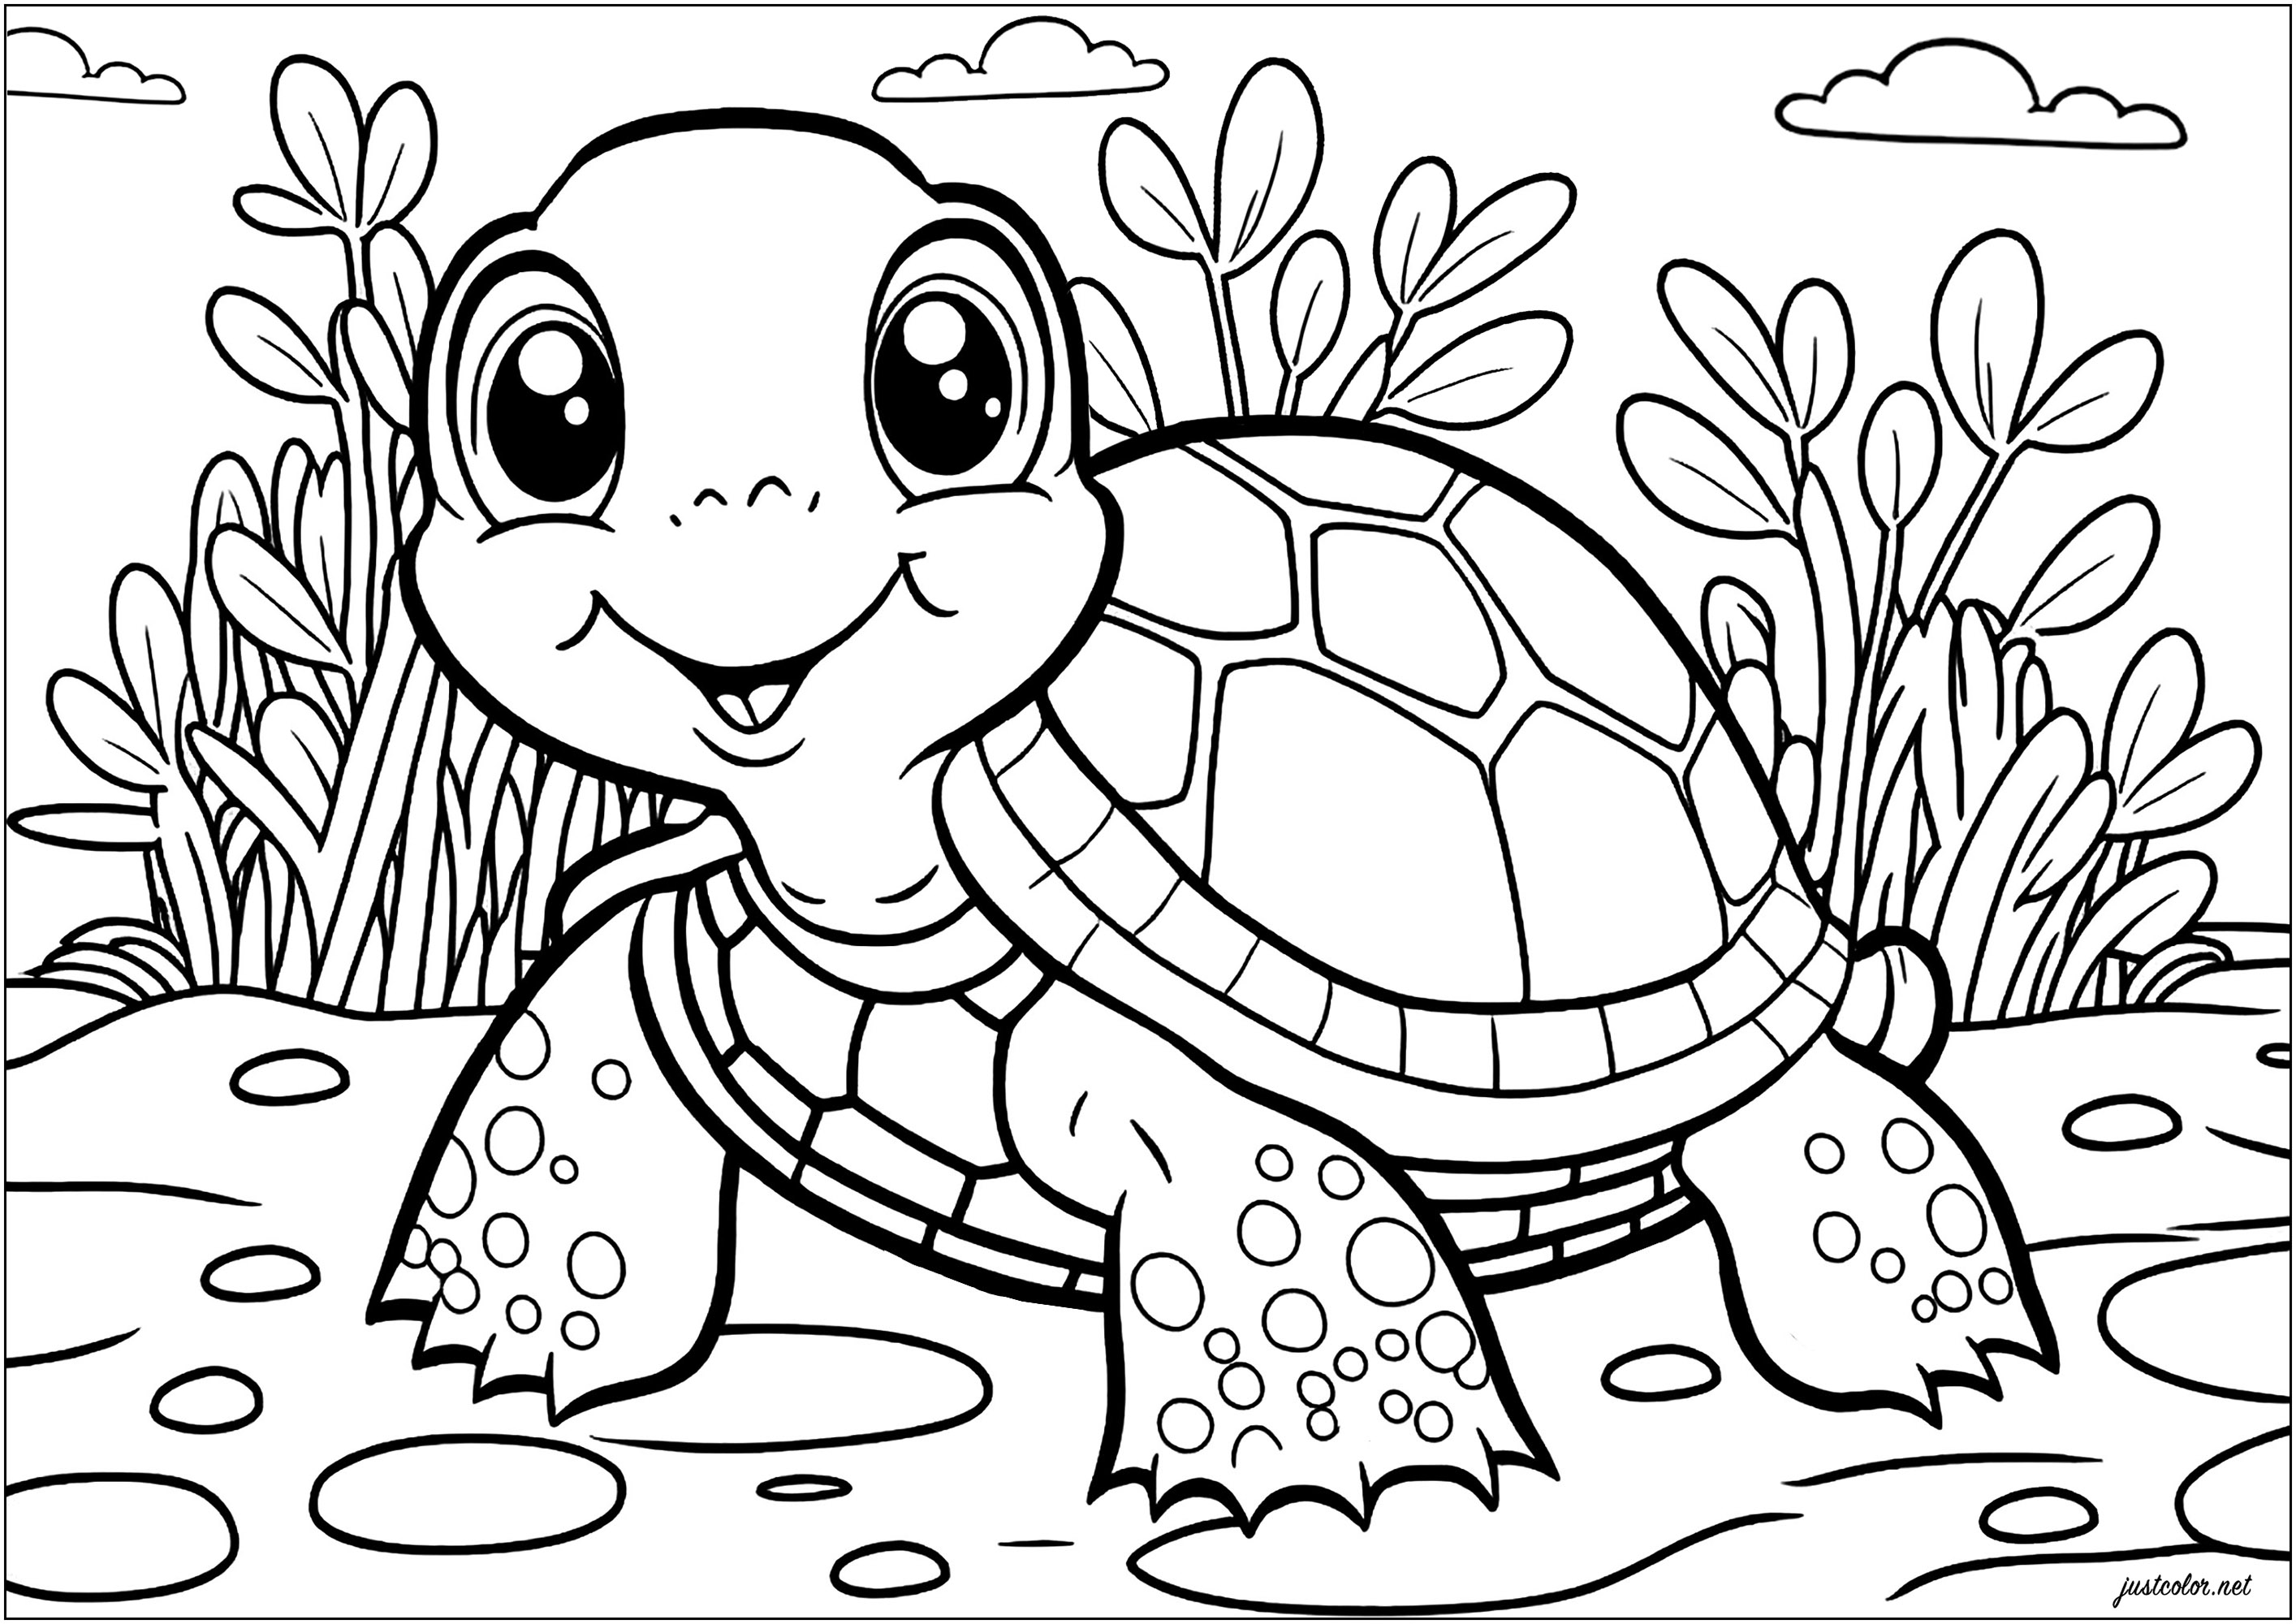 Tartaruga simples para colorir. Desenha o mundo natural à volta desta tartaruga com a tua criatividade e as tuas cores preferidas.